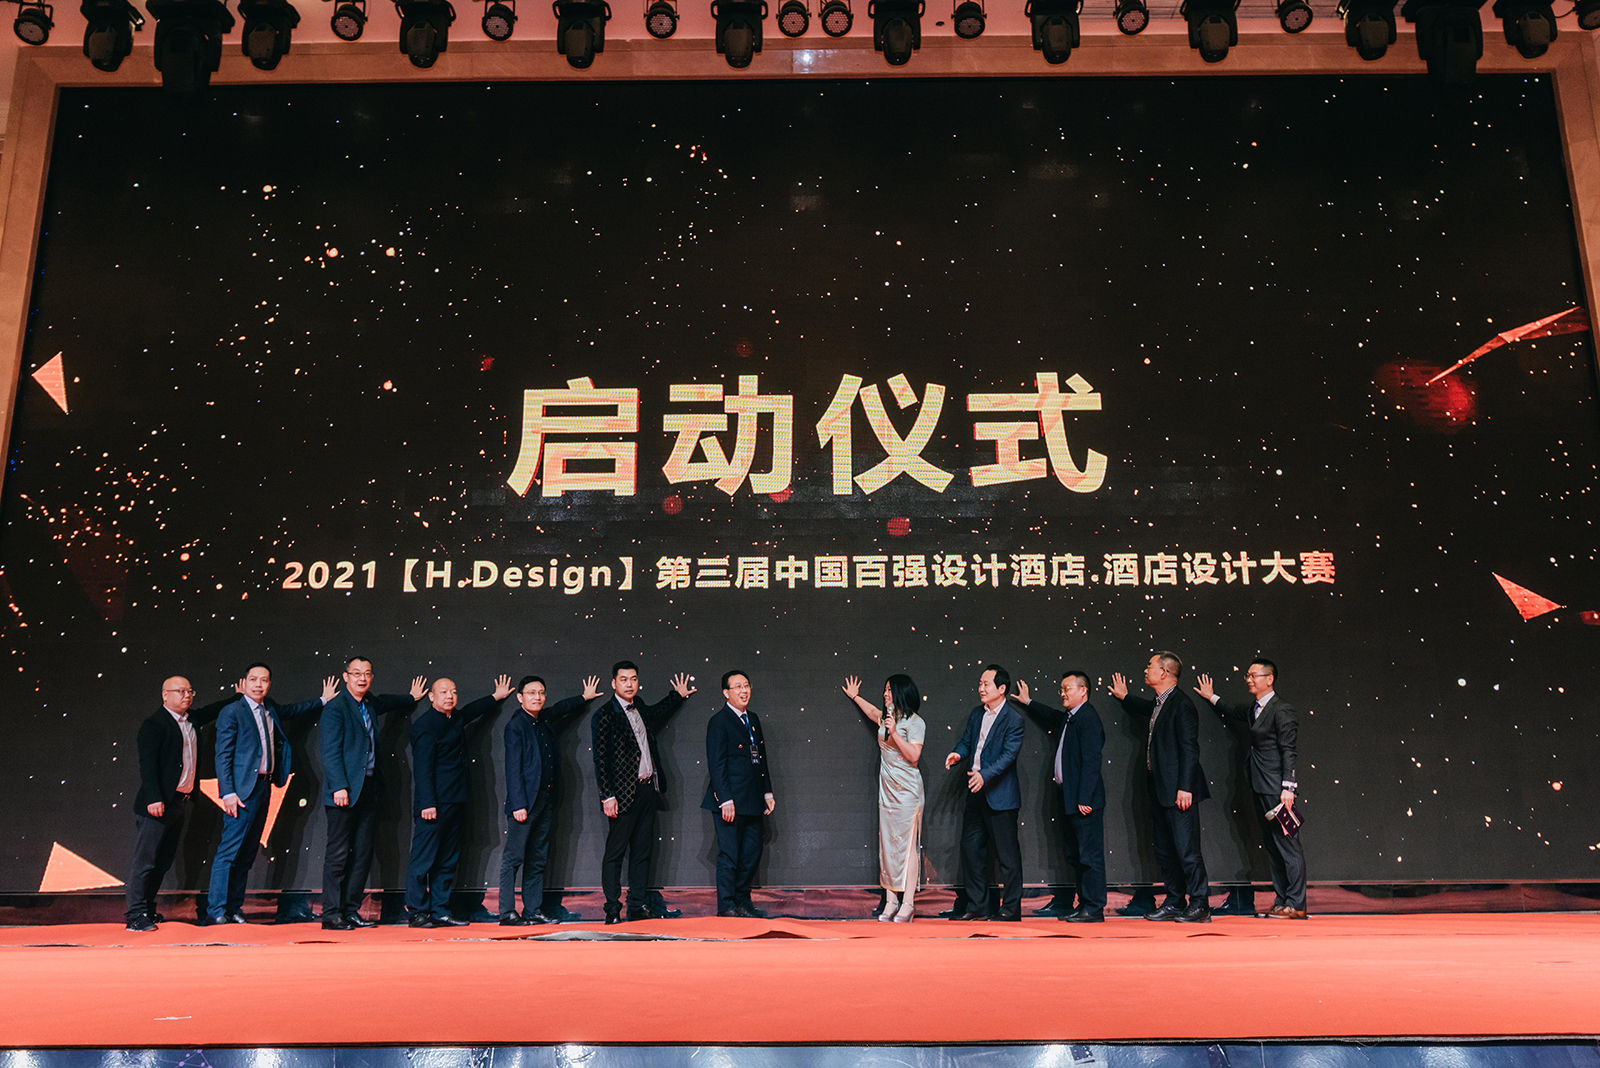 紅專設計唐也受邀參加第六屆中國西部酒店業發展峰會